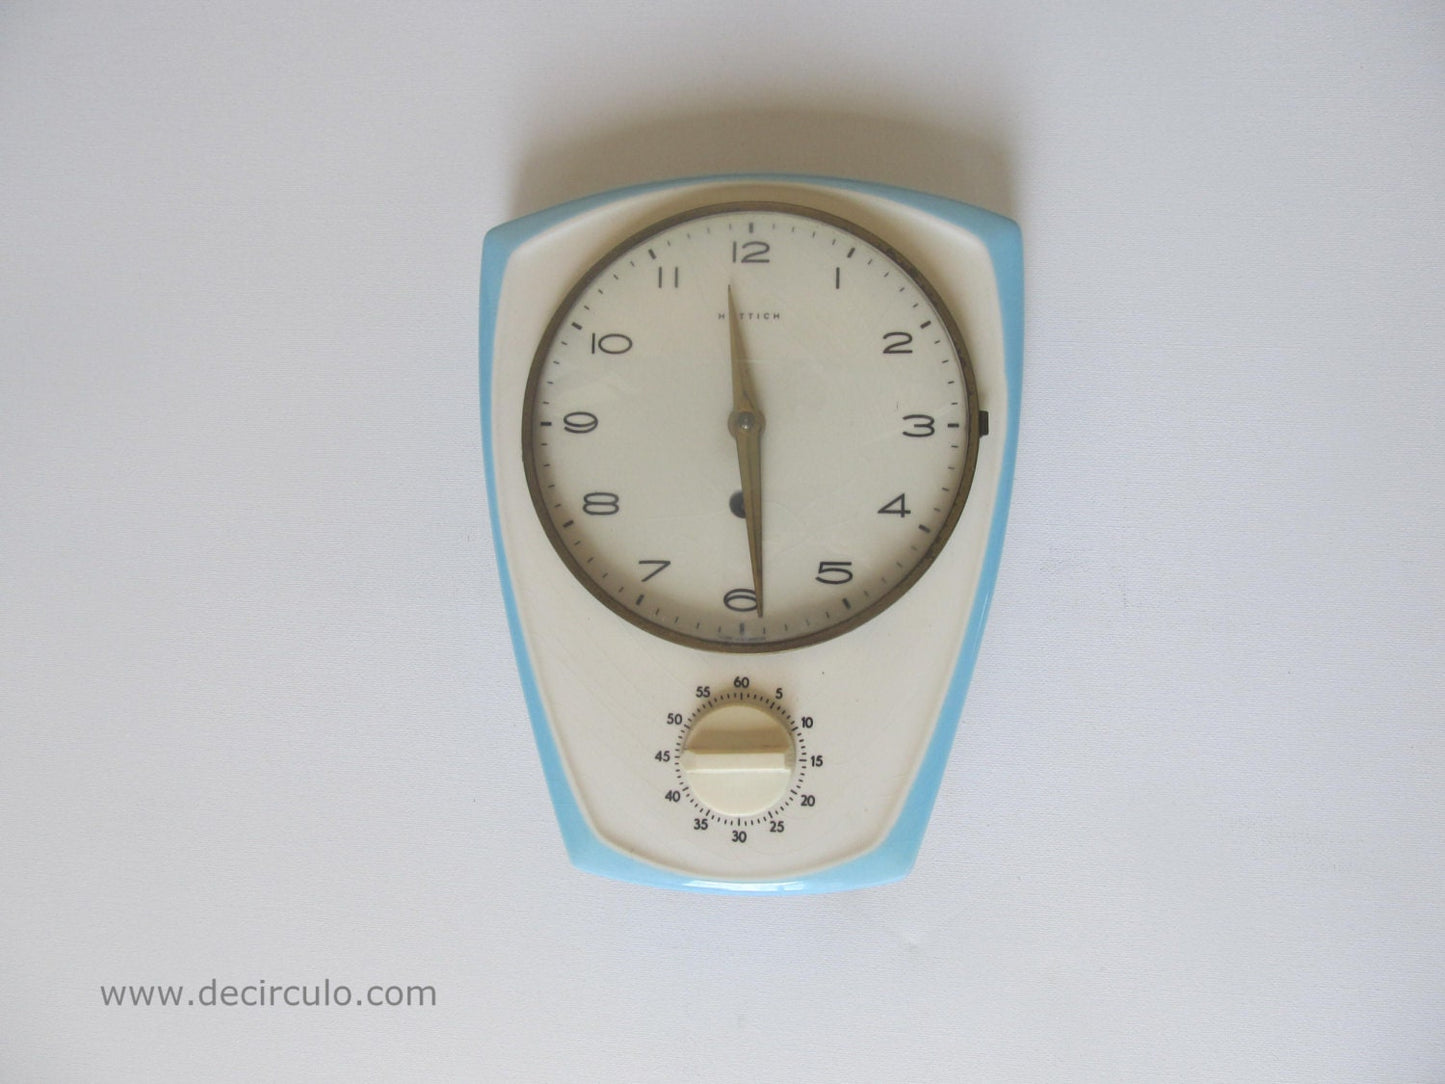 Ceramic Hettich kitchen clockwith timer, porcelain german vintage kichten clock with key